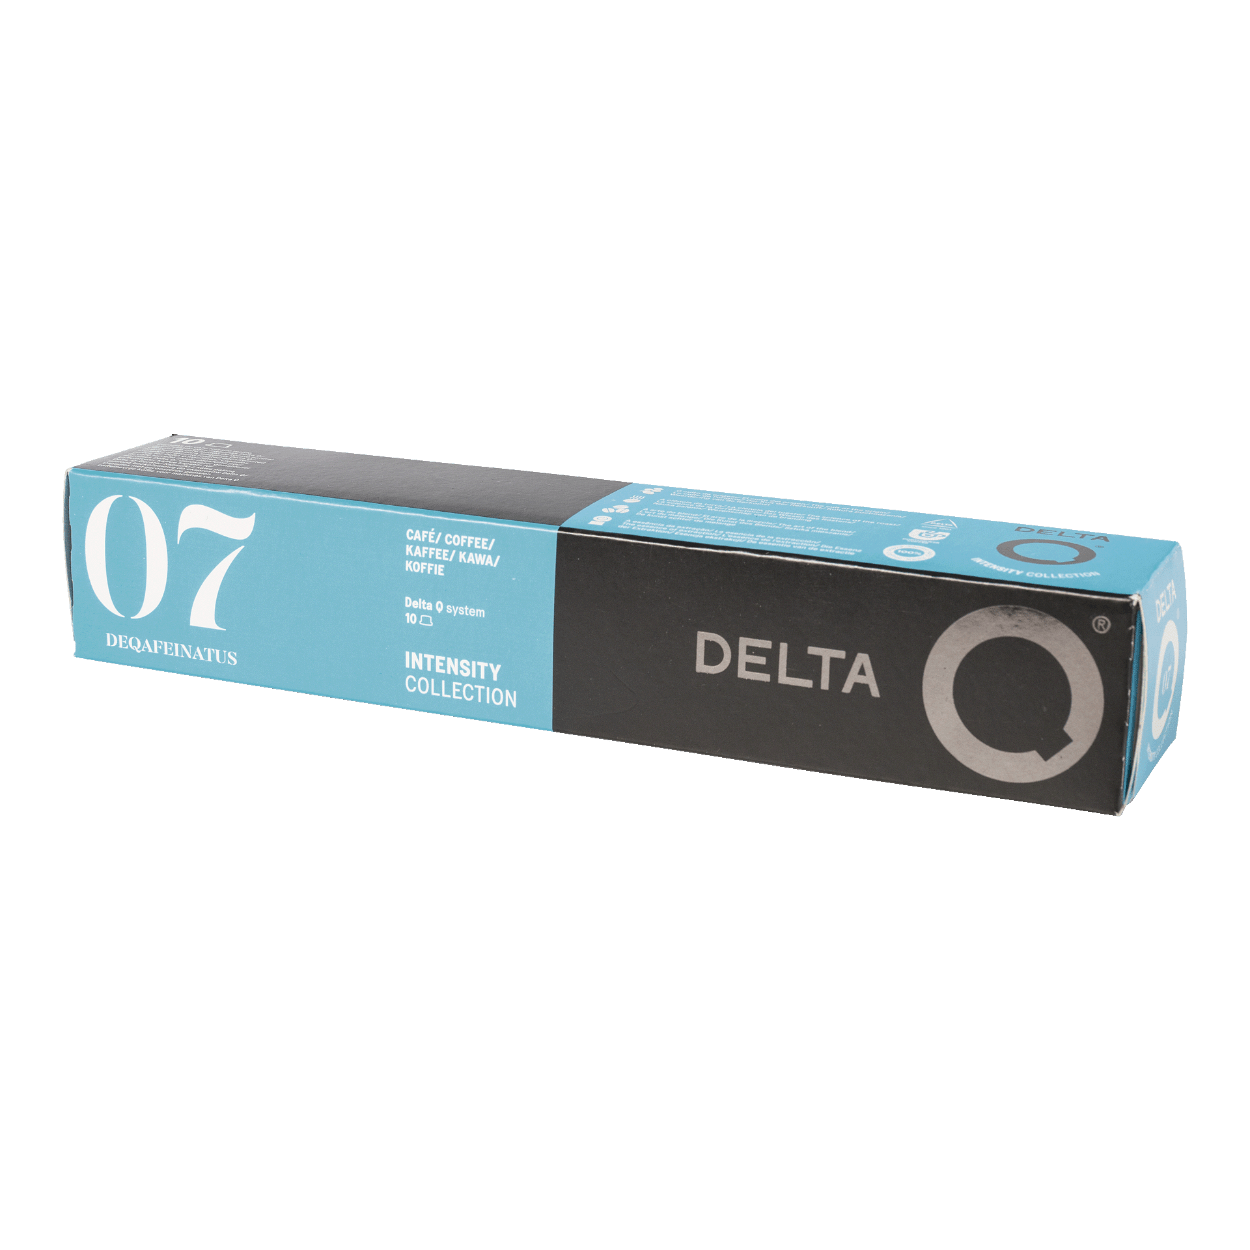 Le Delta Q deQafeinatus - décaféiné de chez Delta